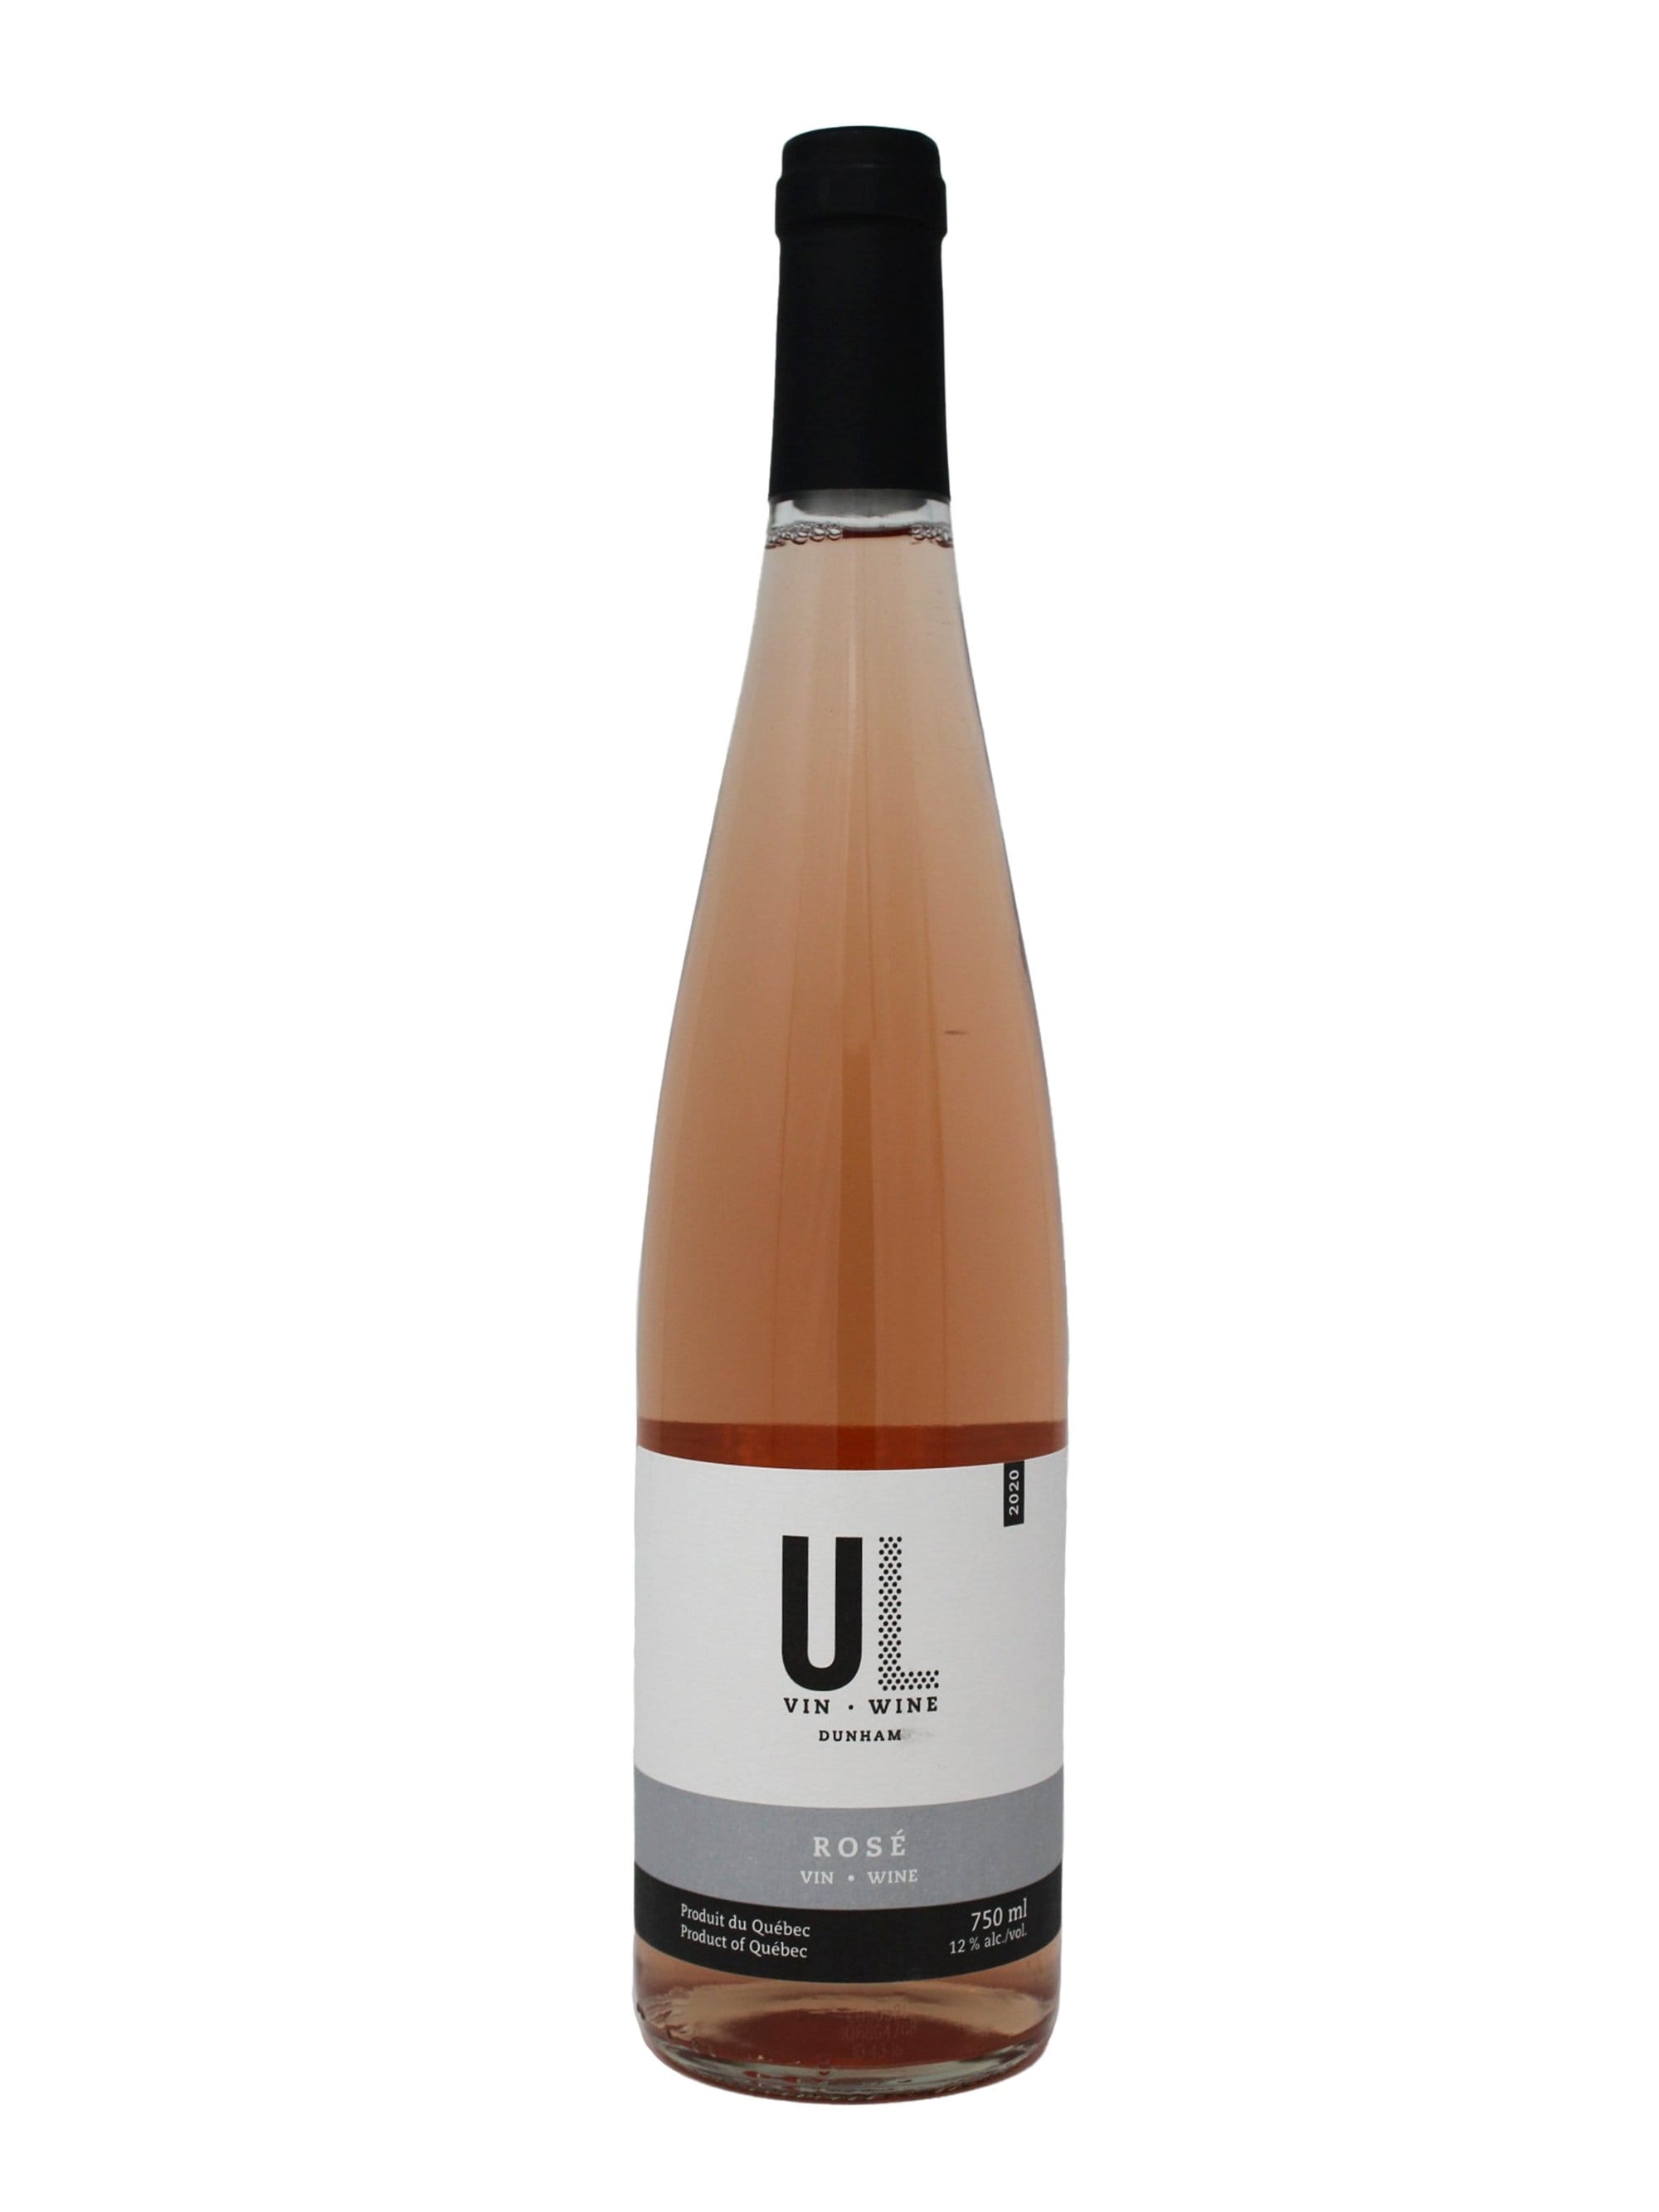 Union Libre vin Rosé 2020 - Vin rosé de chez Union Libre